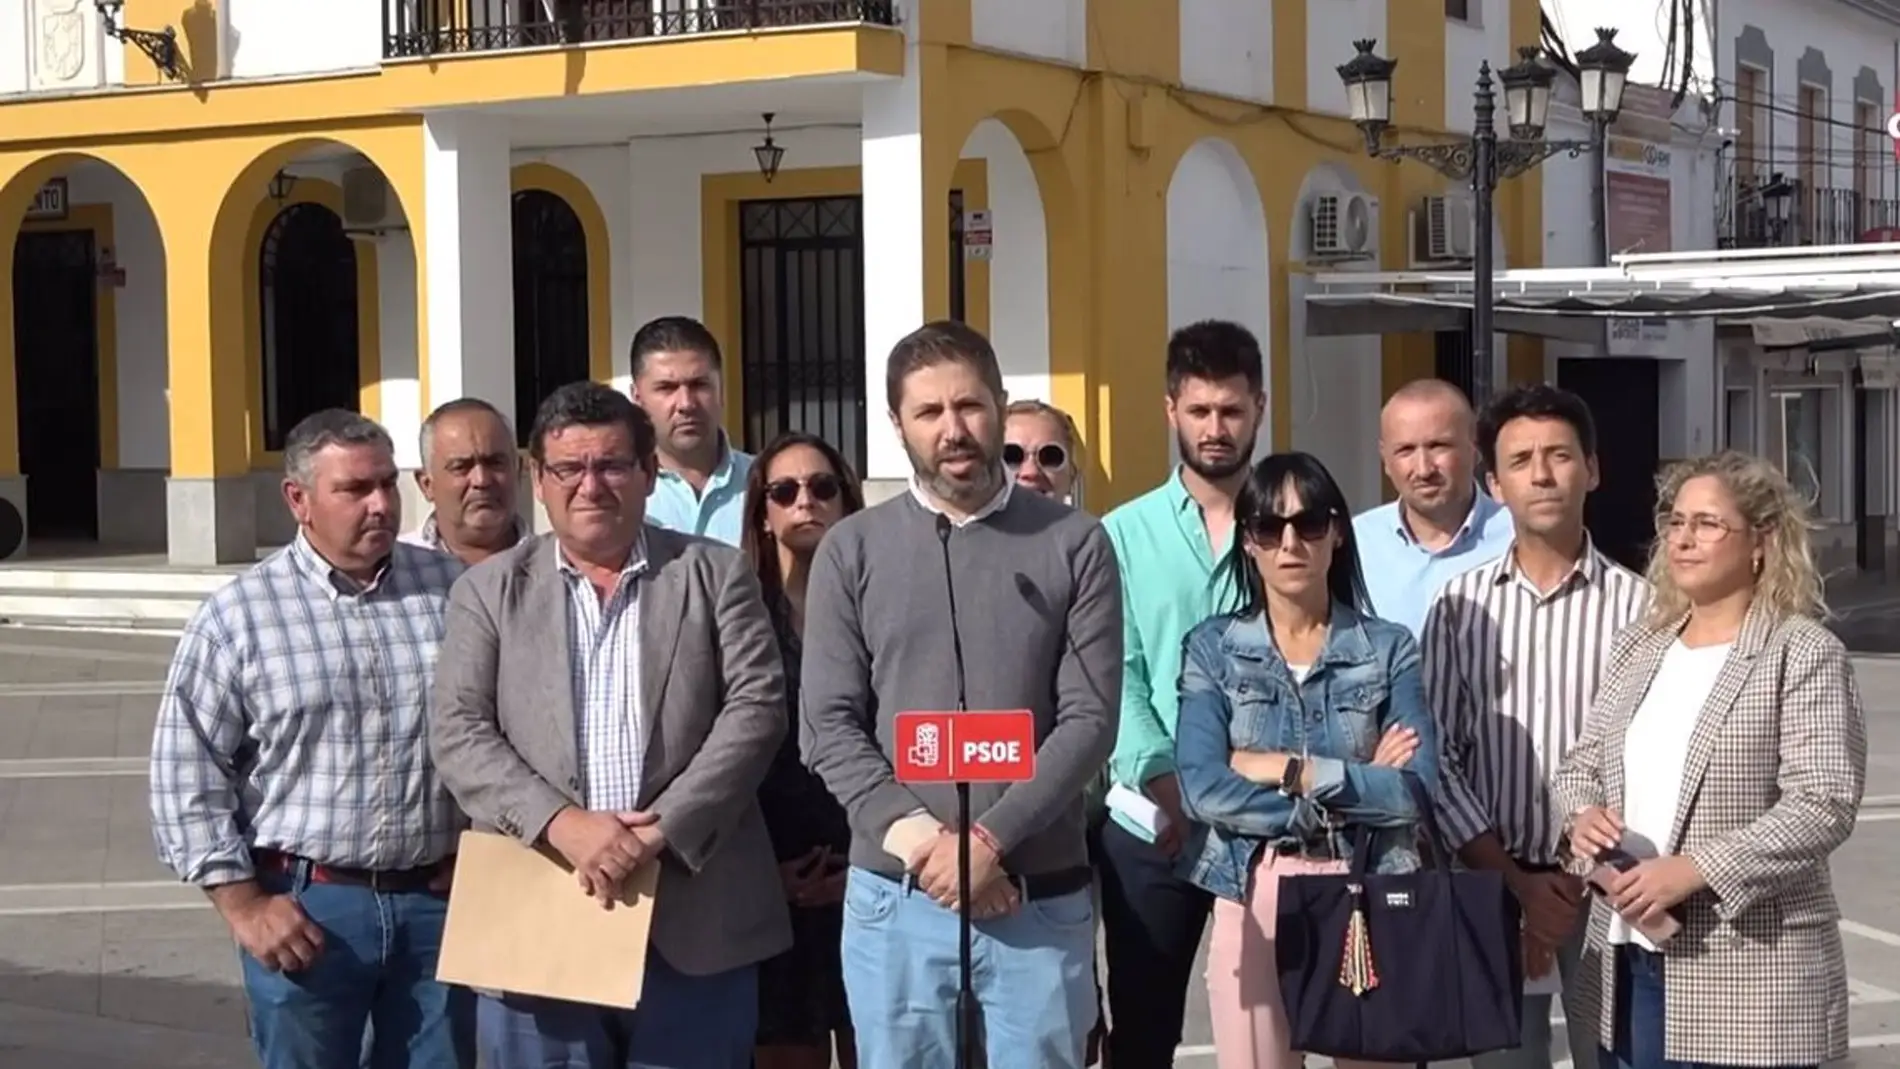 11 alcaldes socialistas firman ante notario su rechazo ante el proyecto de Vertedero en Salvatierra de los Barros